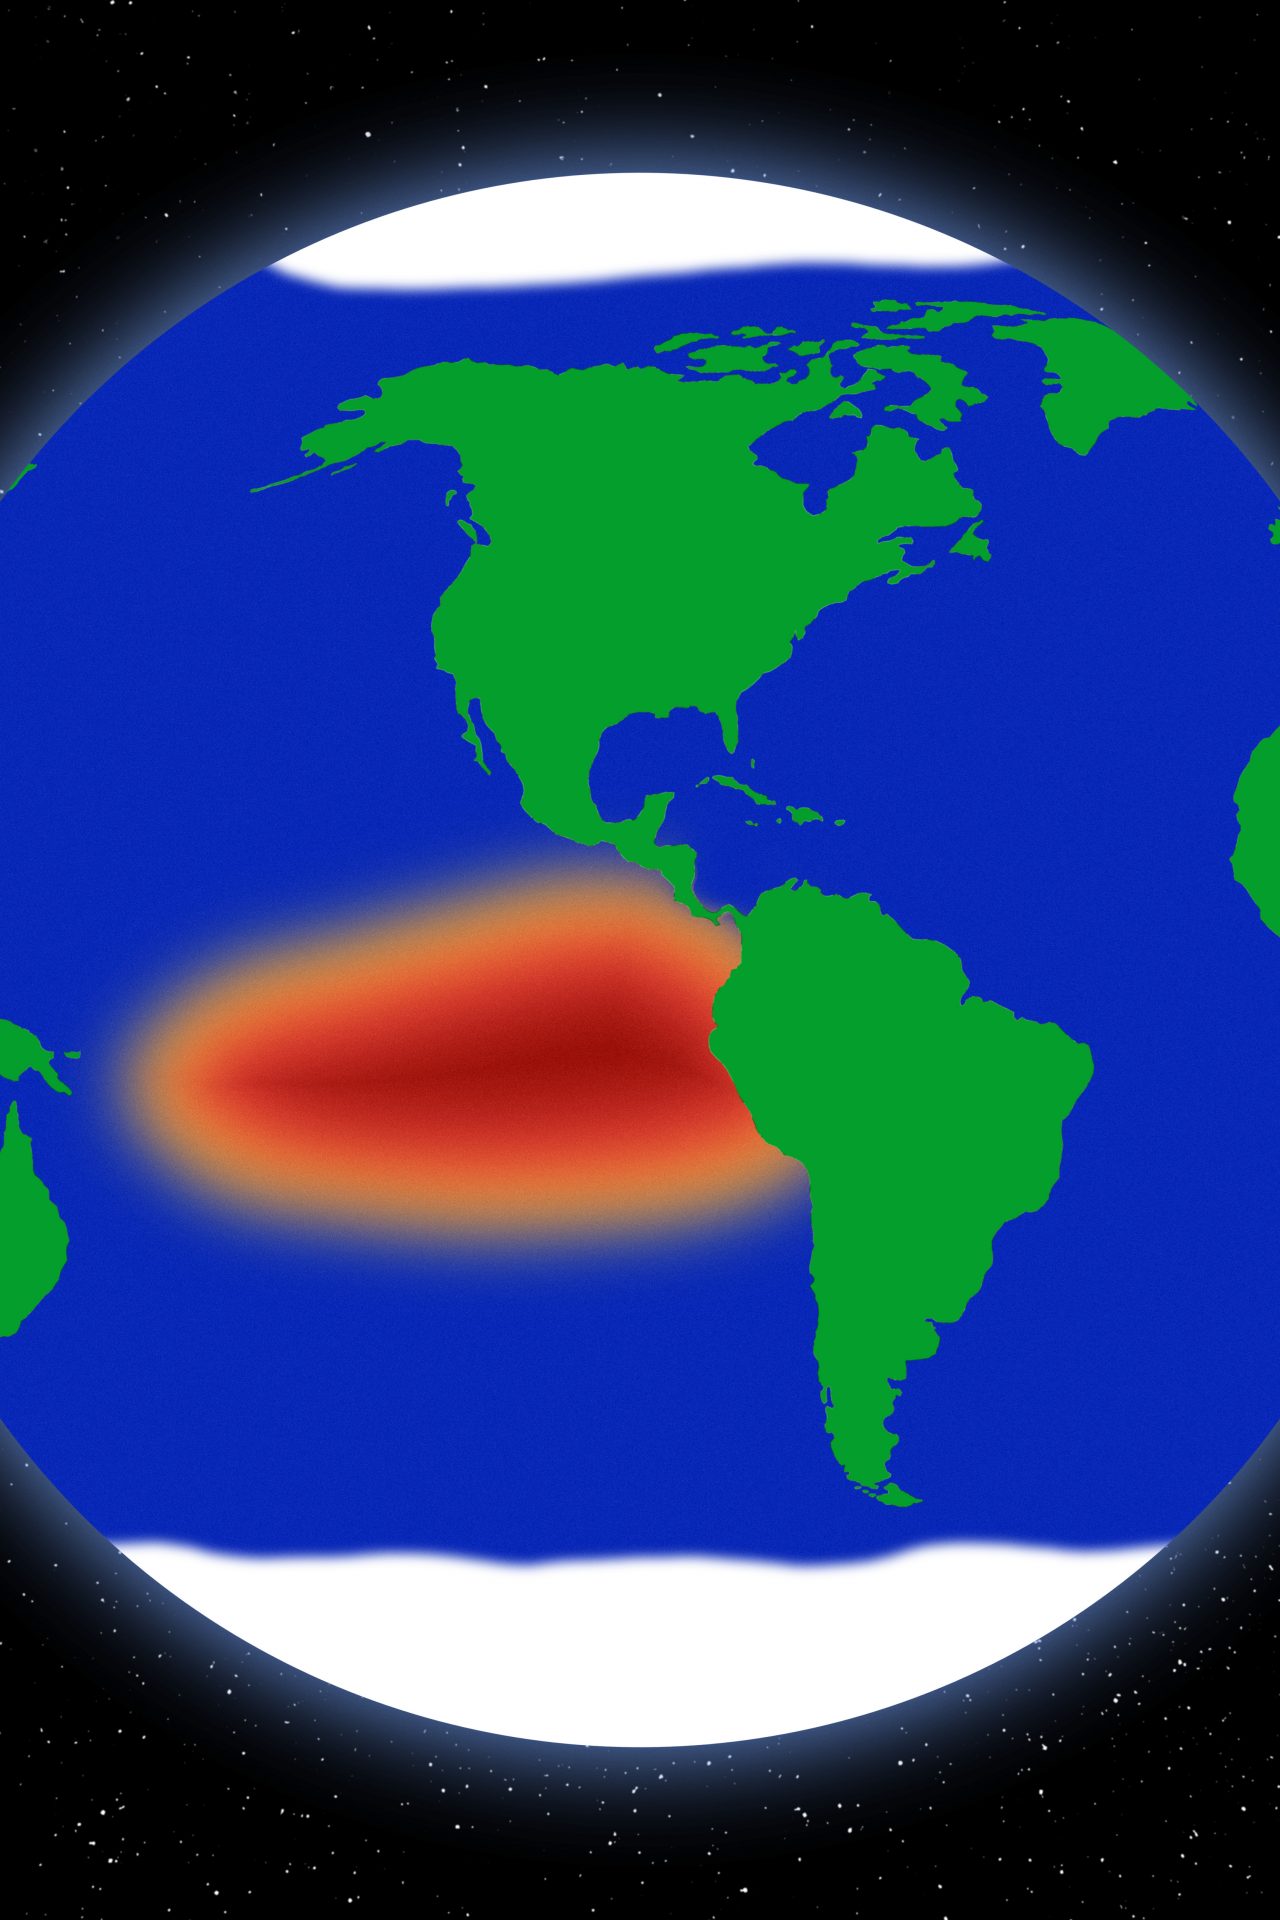 Le phénomène El Niño